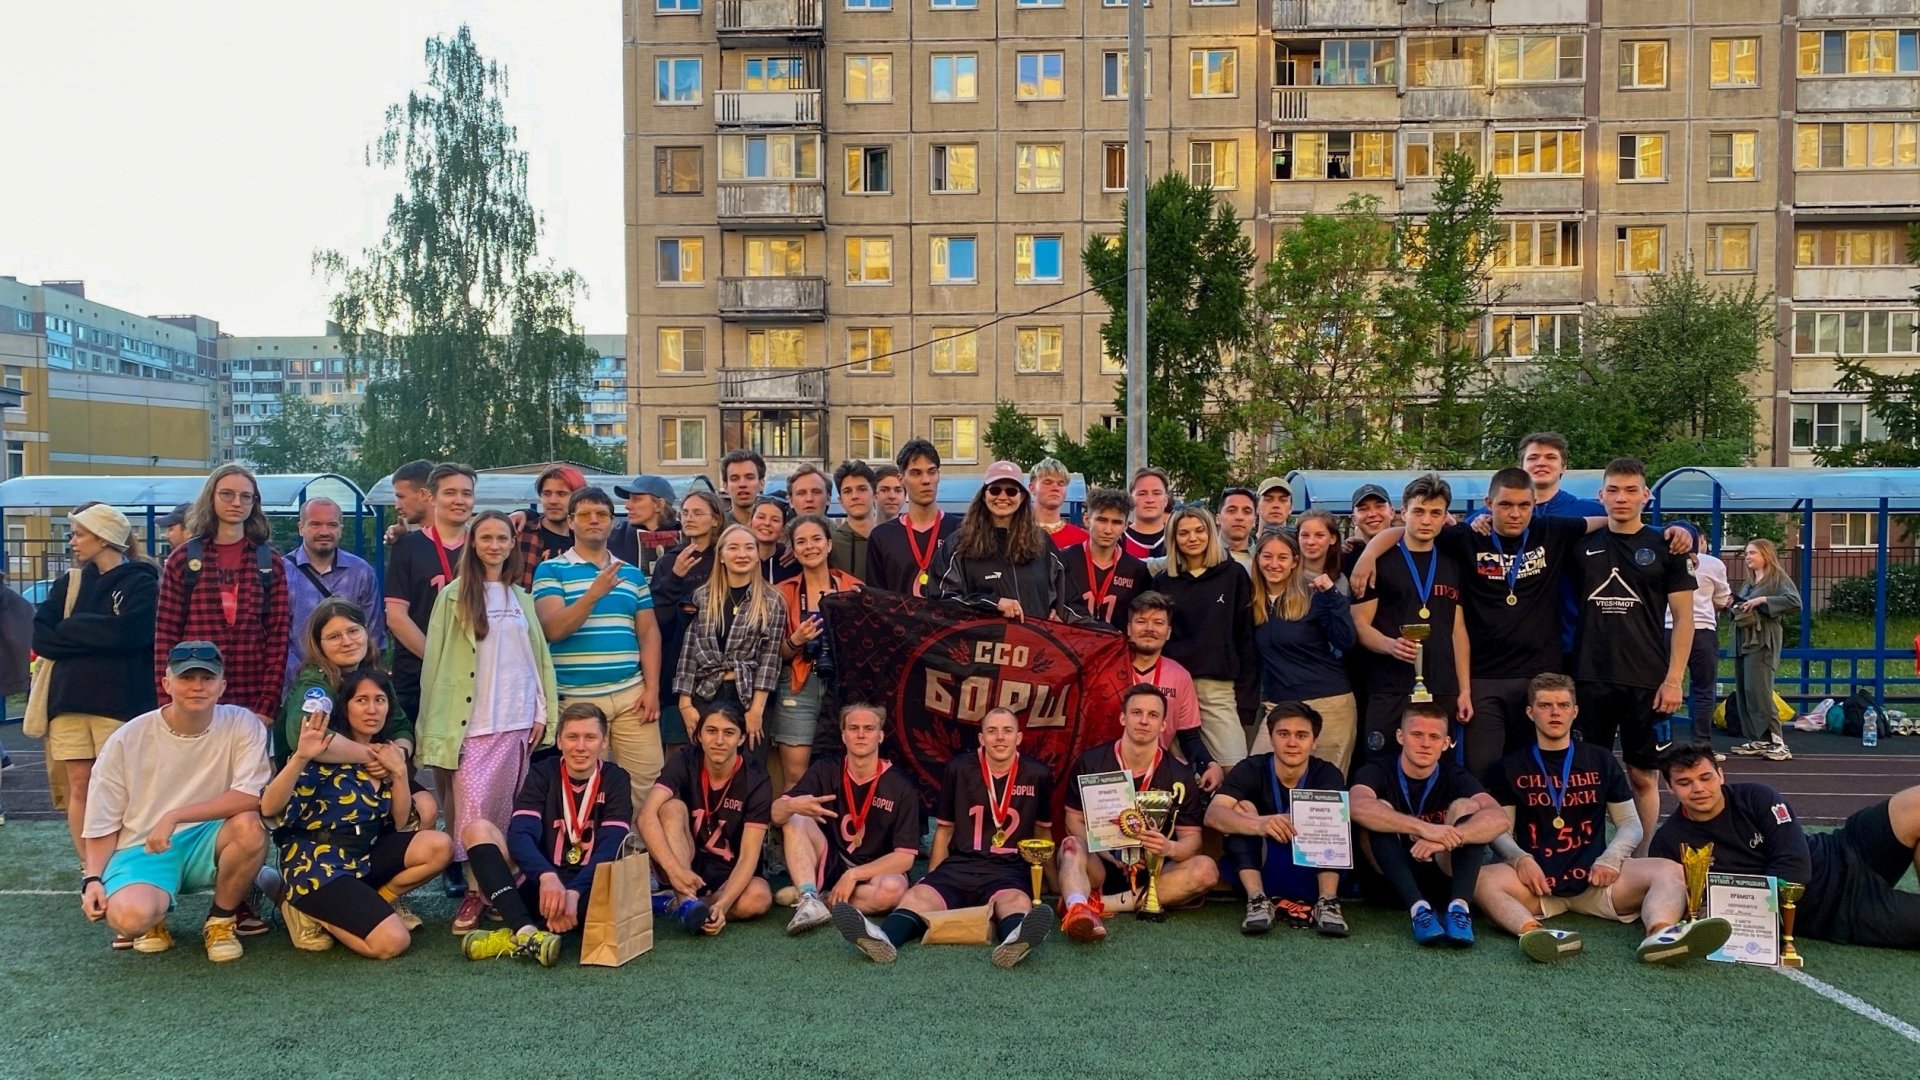 Подведены итоги турнира по футболу студенческих отрядов Санкт-Петербурга. 